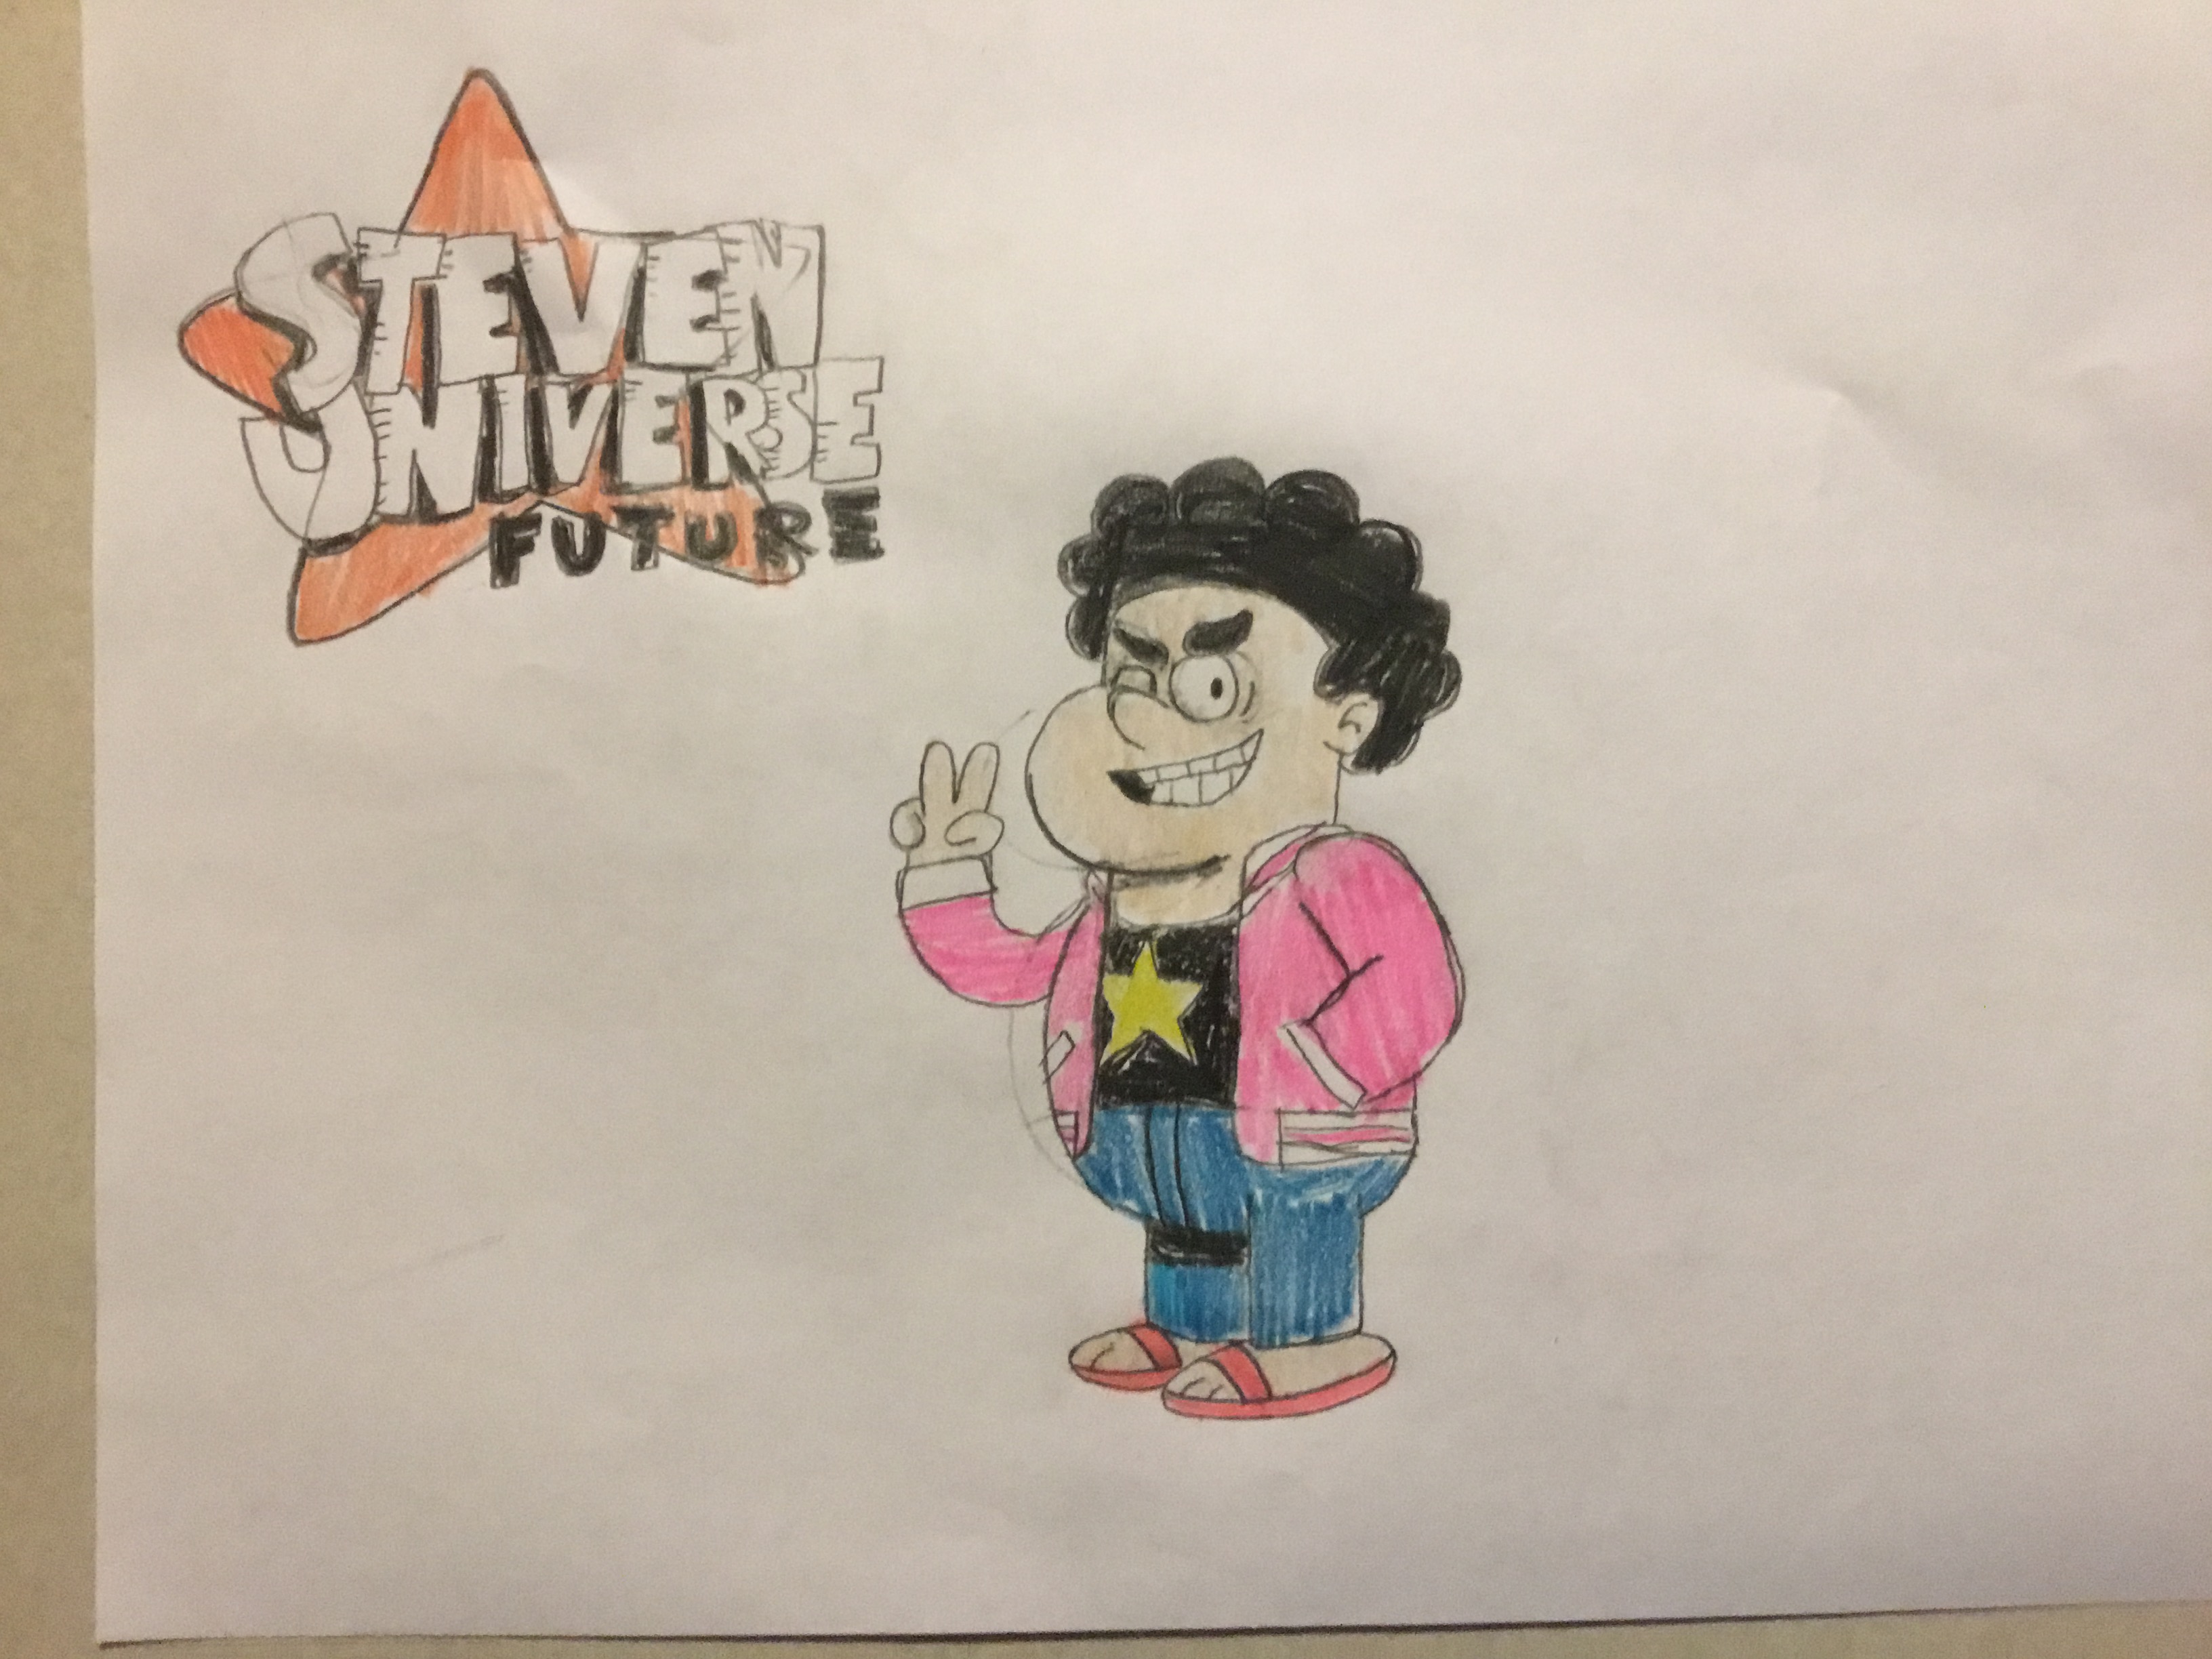 Steven Universe - SU Future by AniLover16 on DeviantArt